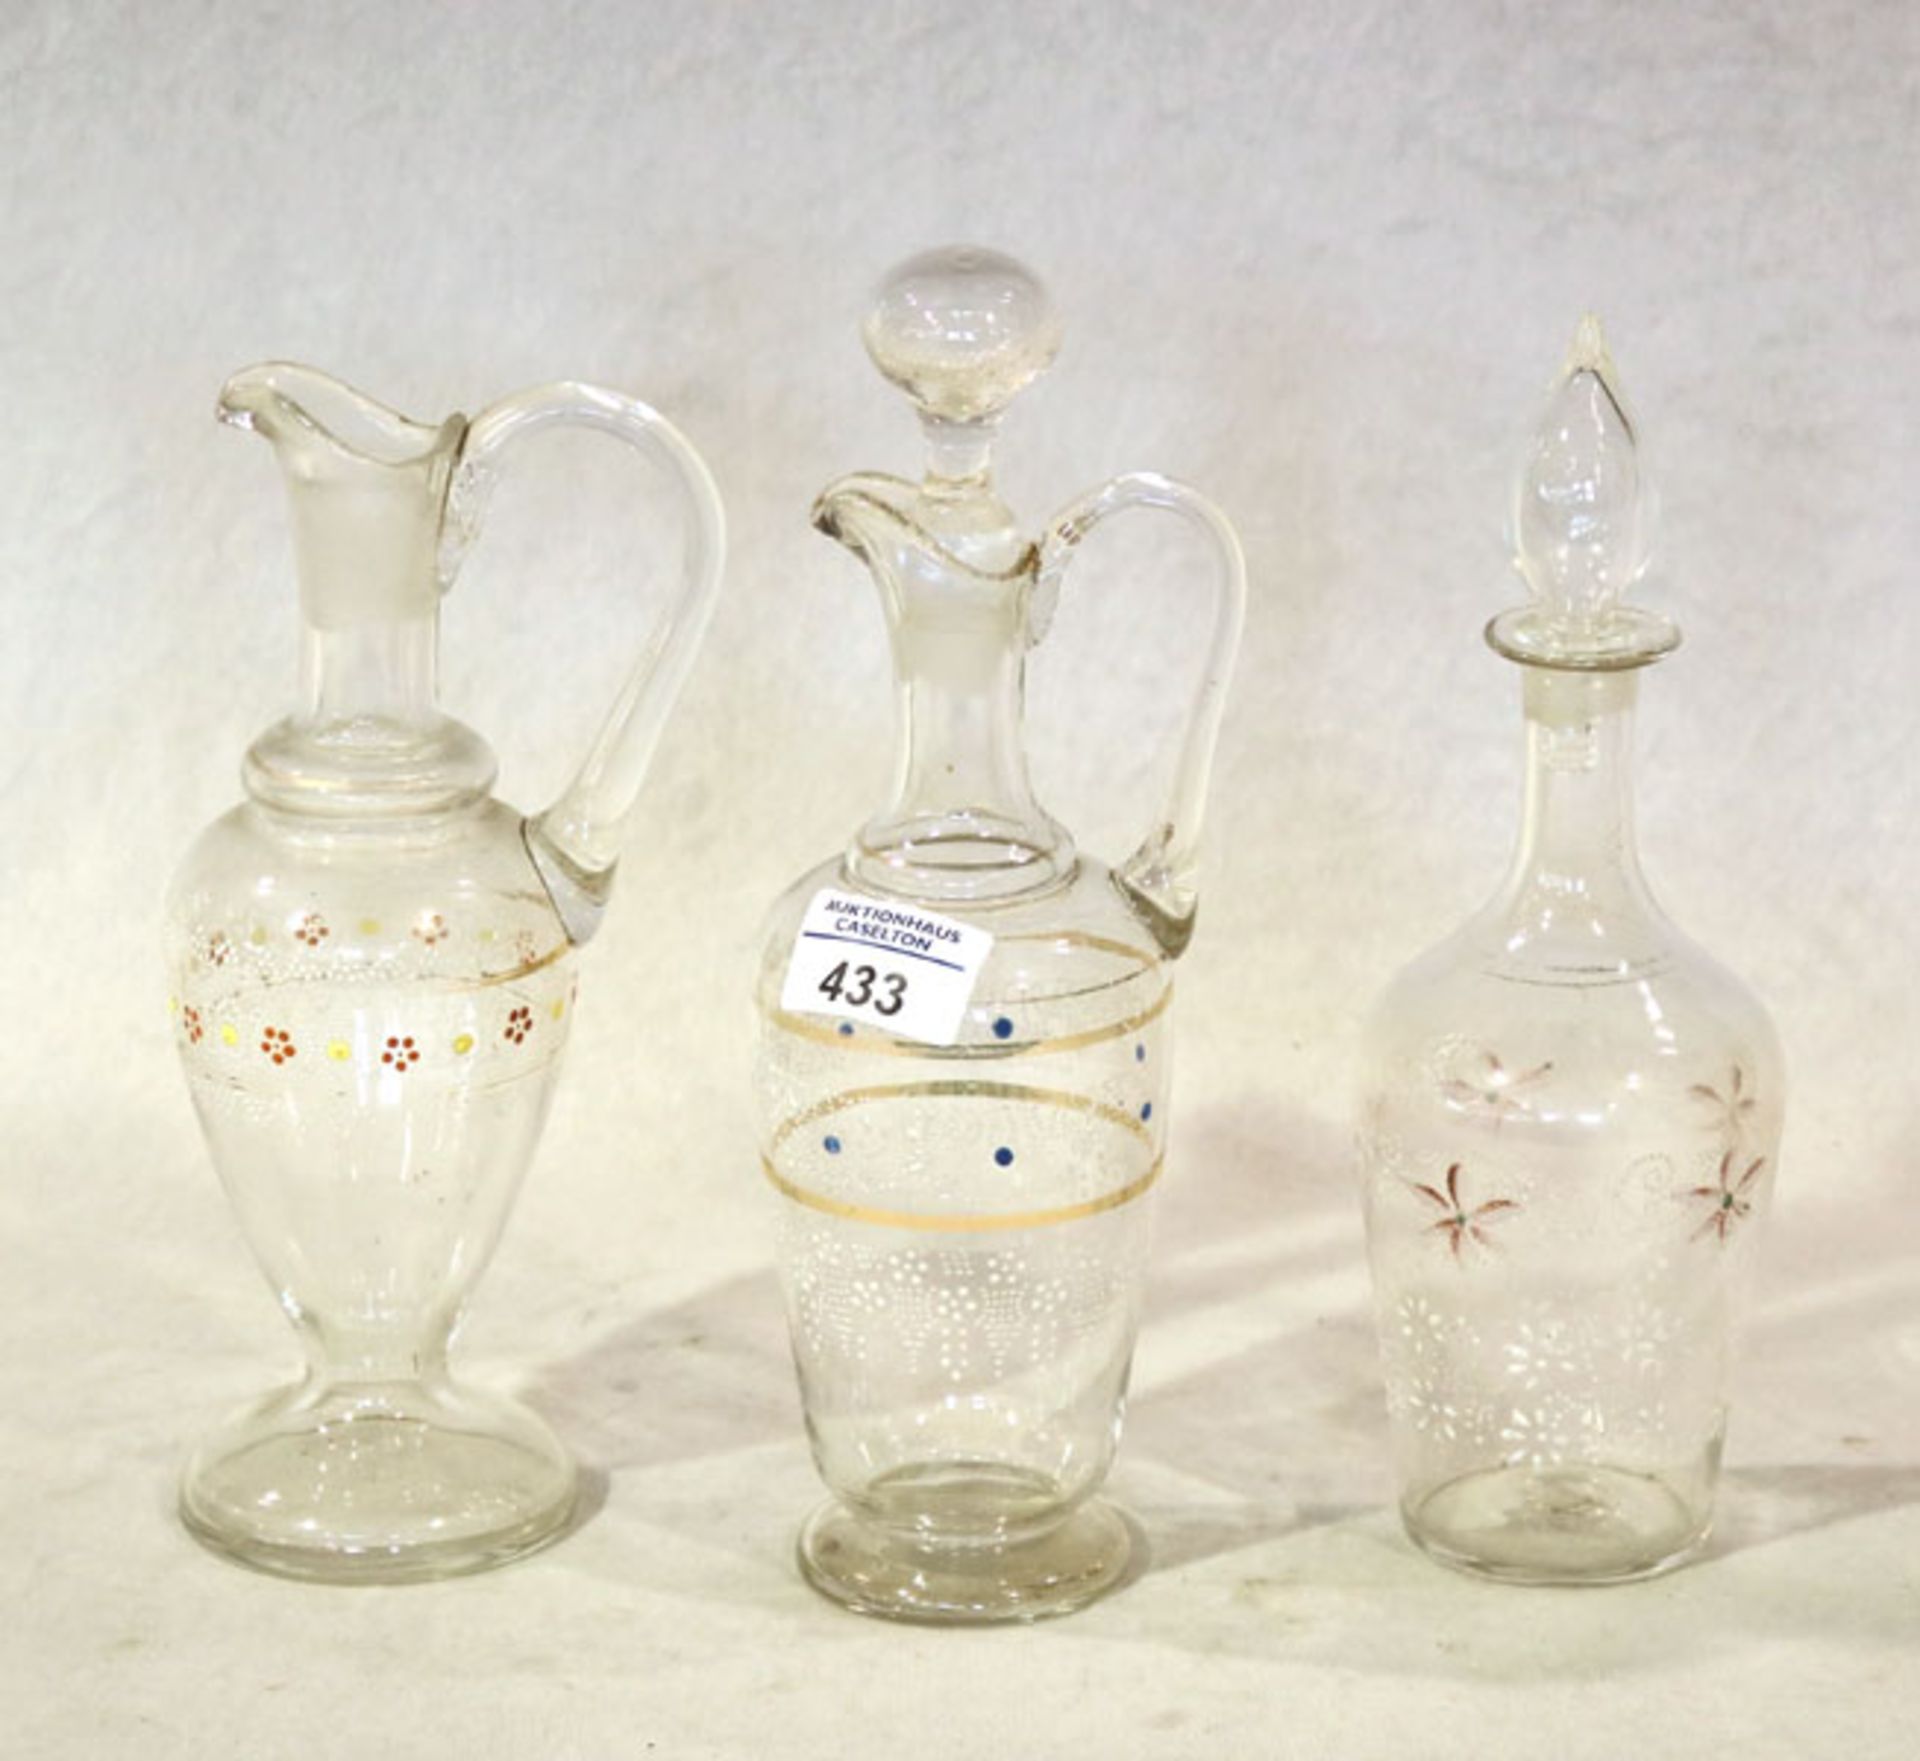 3 Glaskaraffen mit Bemalung, ein Stöpsel fehlt, einer nicht Original, H 22/25 cm, Gebrauchsspuren